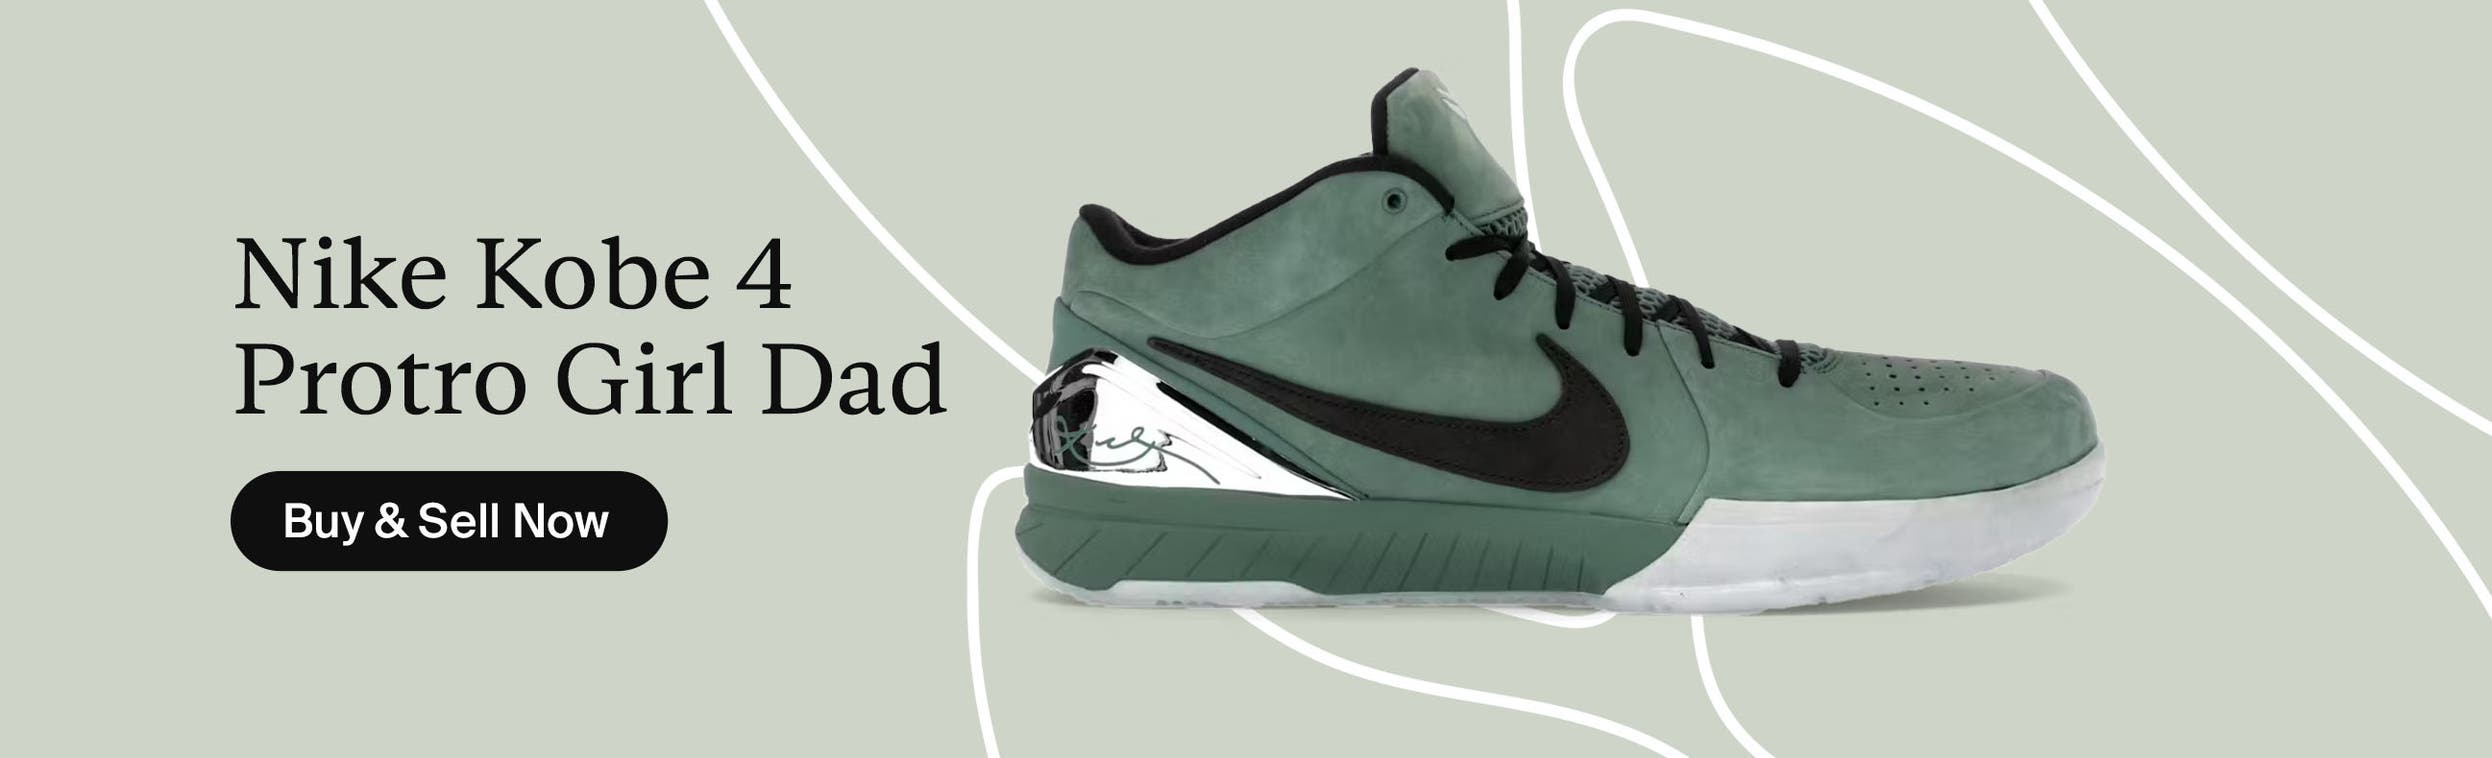 Nike Kobe_4_Protro_Girl_Dad-Banners-ENPrimary_Desktop copy (1).jpg